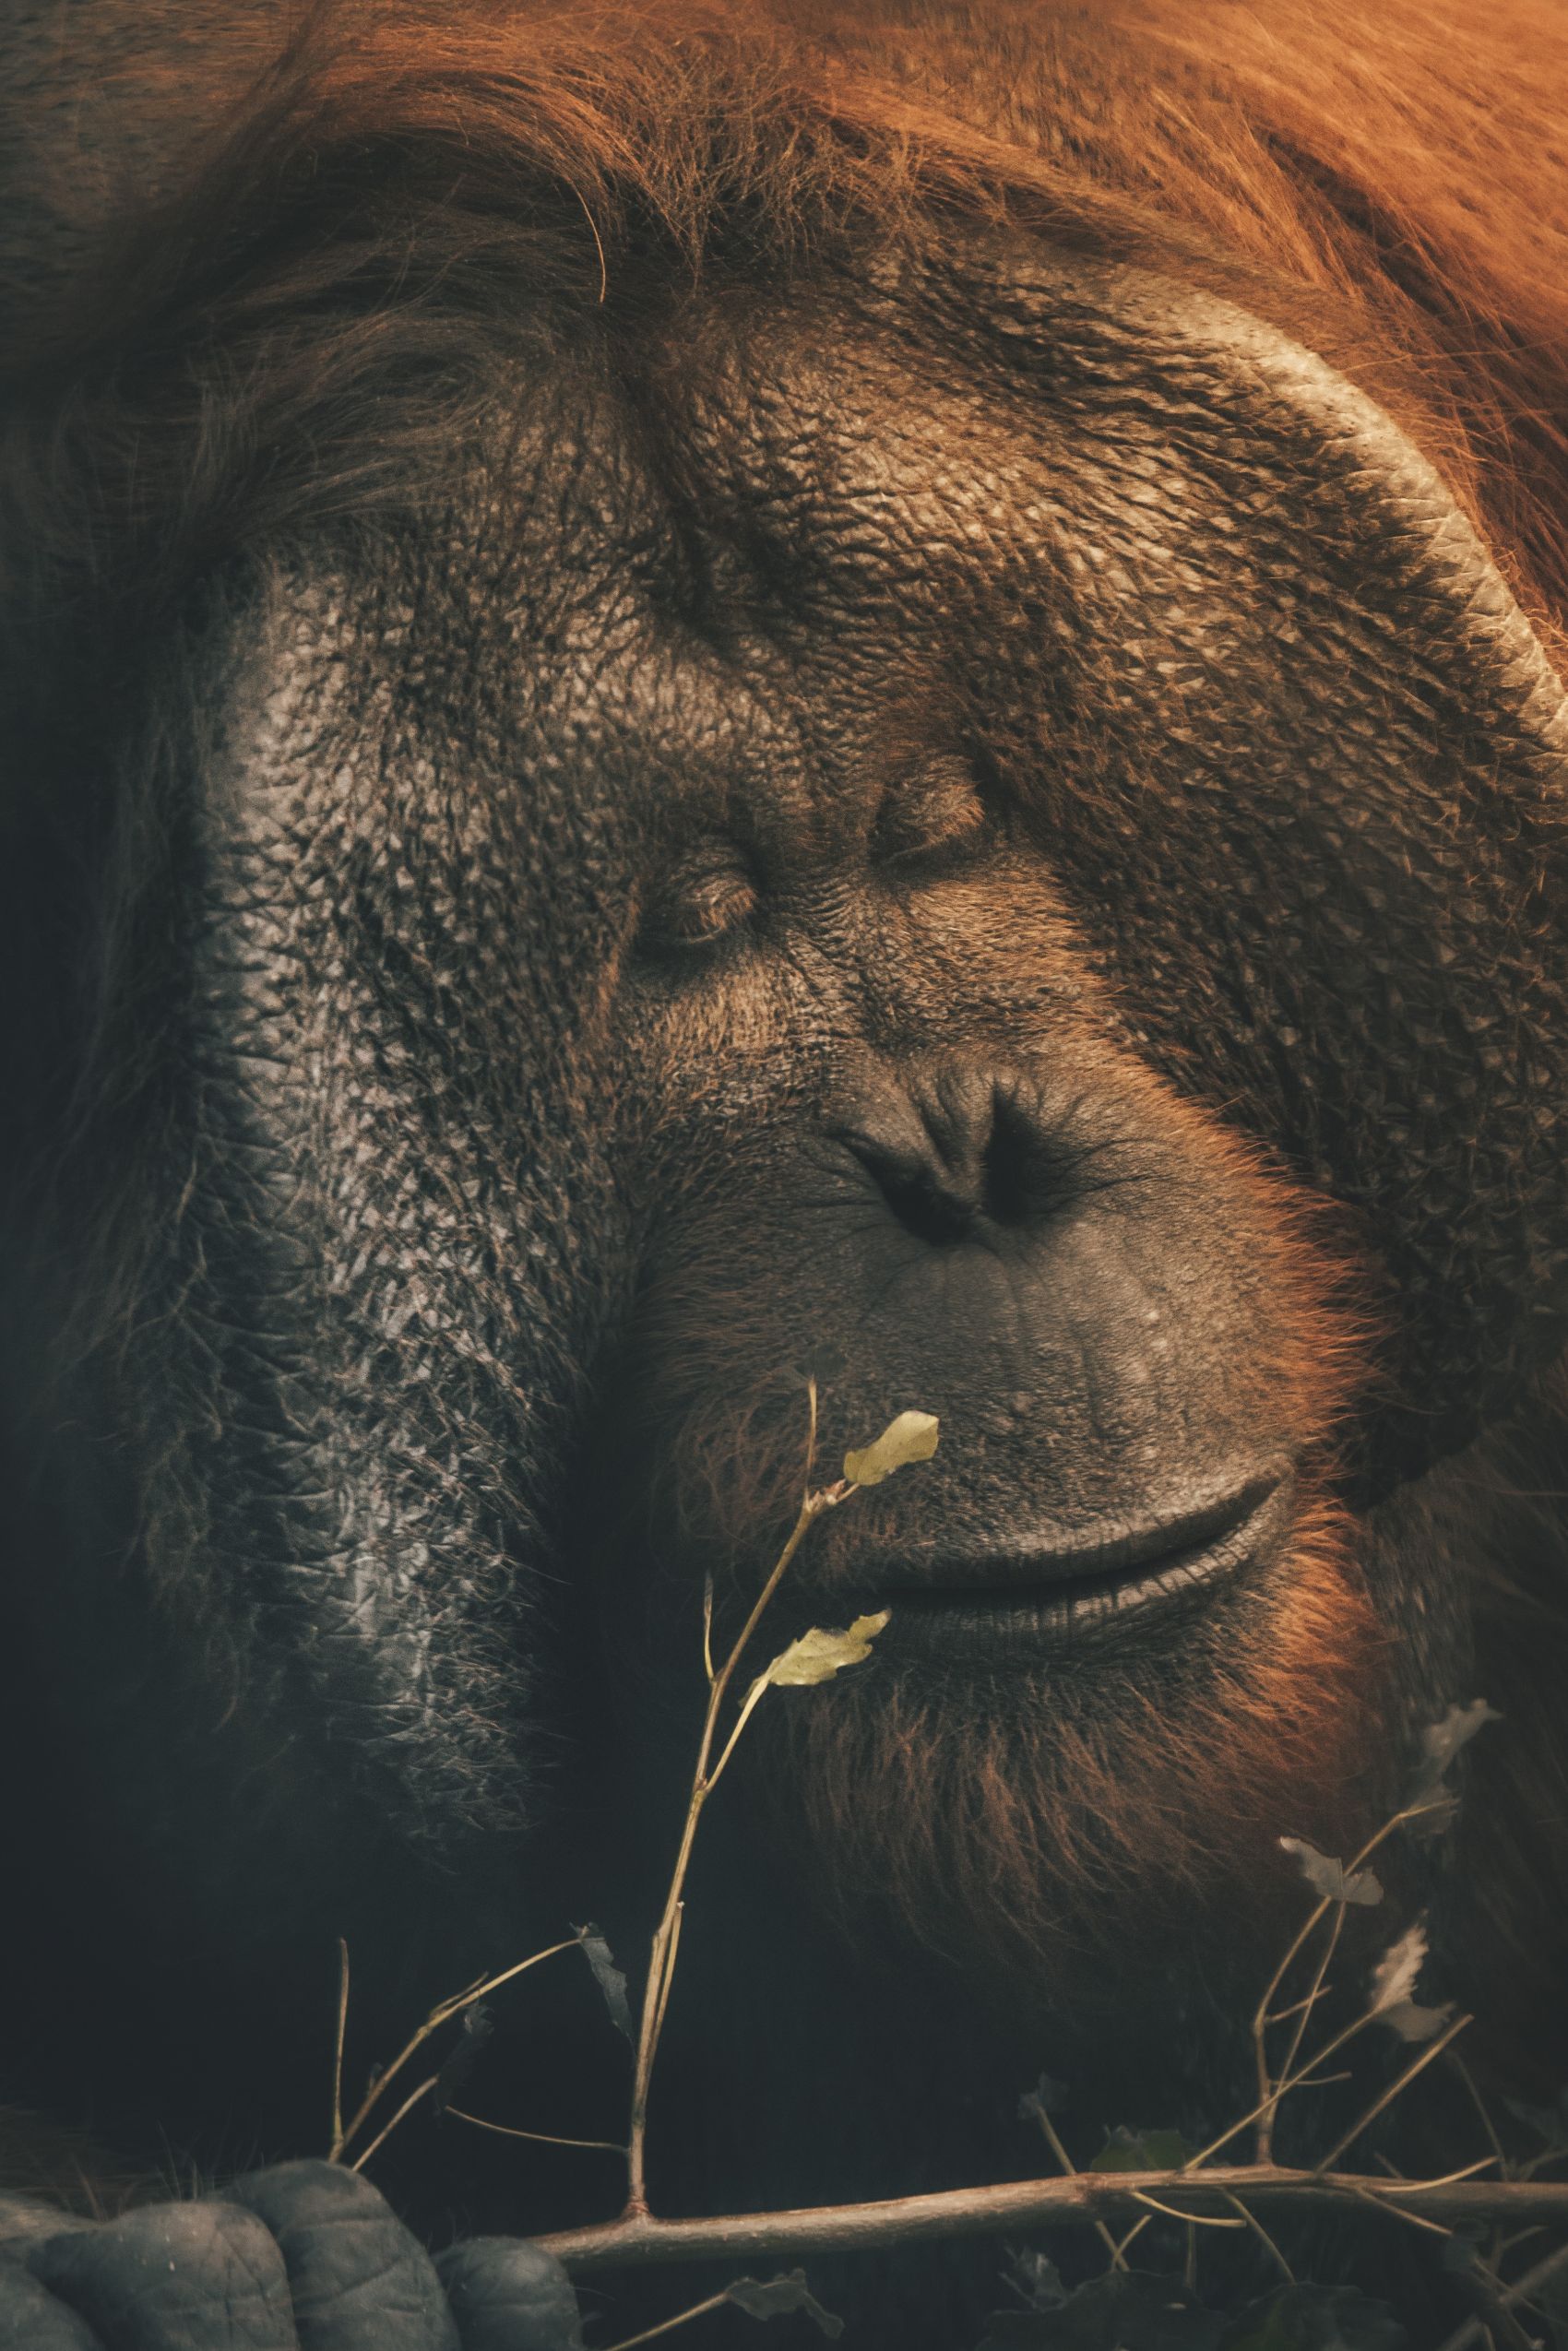 大猩猩睡在树下 库存例证. 插画 包括有 生物, 横向, 敌意, 大猩猩, 庭院, 例证, 图画, 动物区系 - 163202060